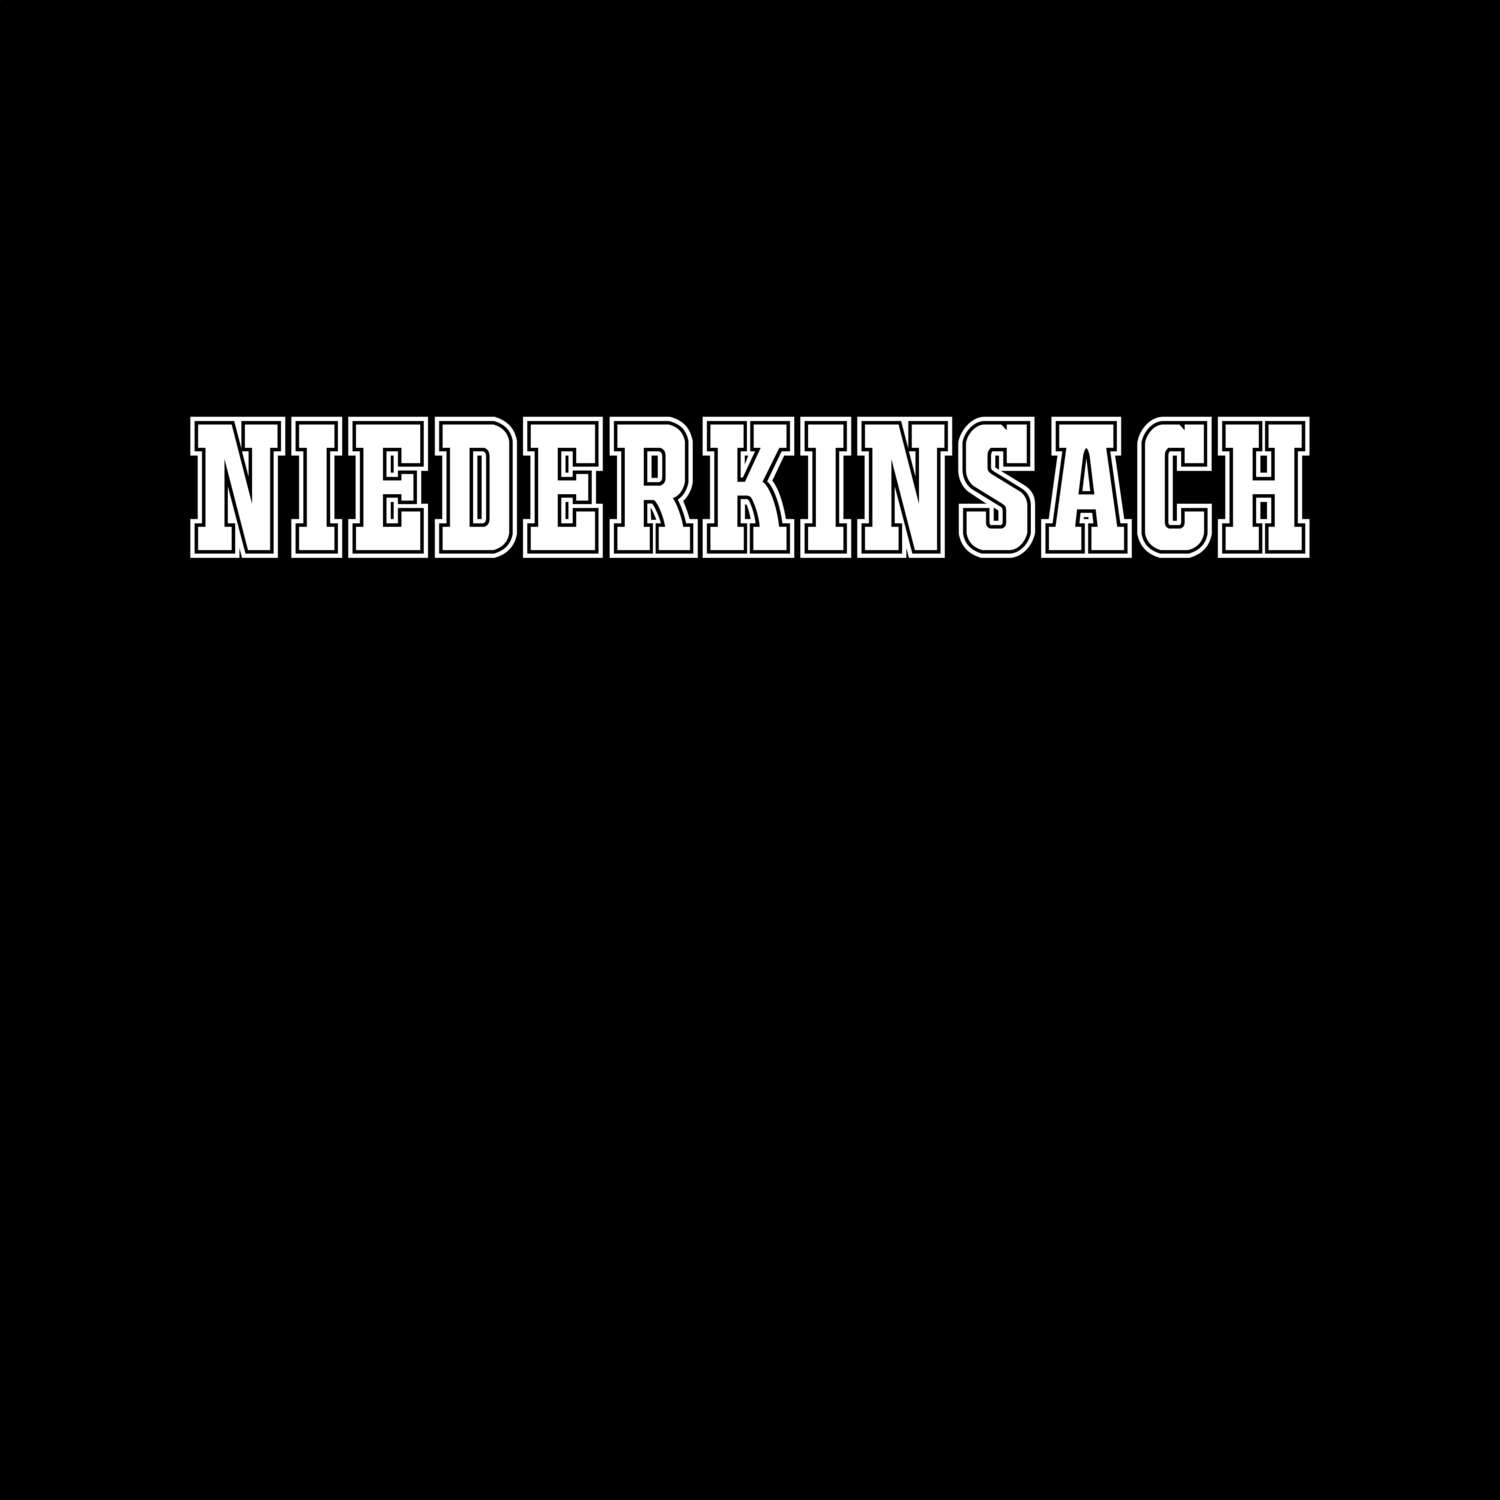 Niederkinsach T-Shirt »Classic«